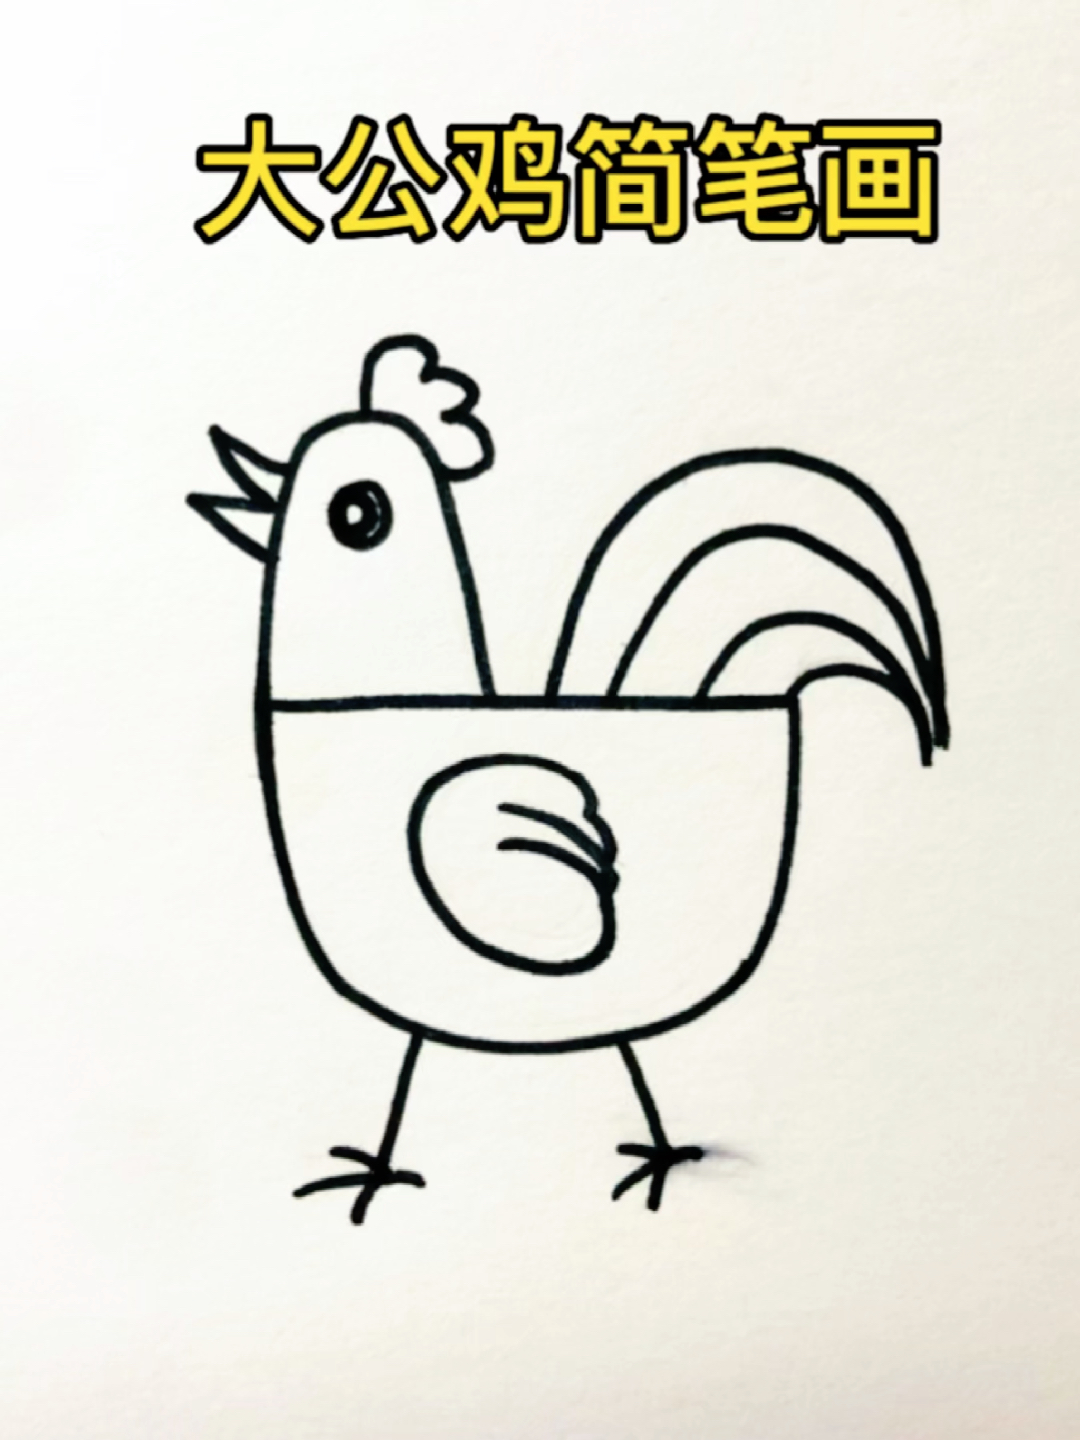 画一个简易的公鸡图片